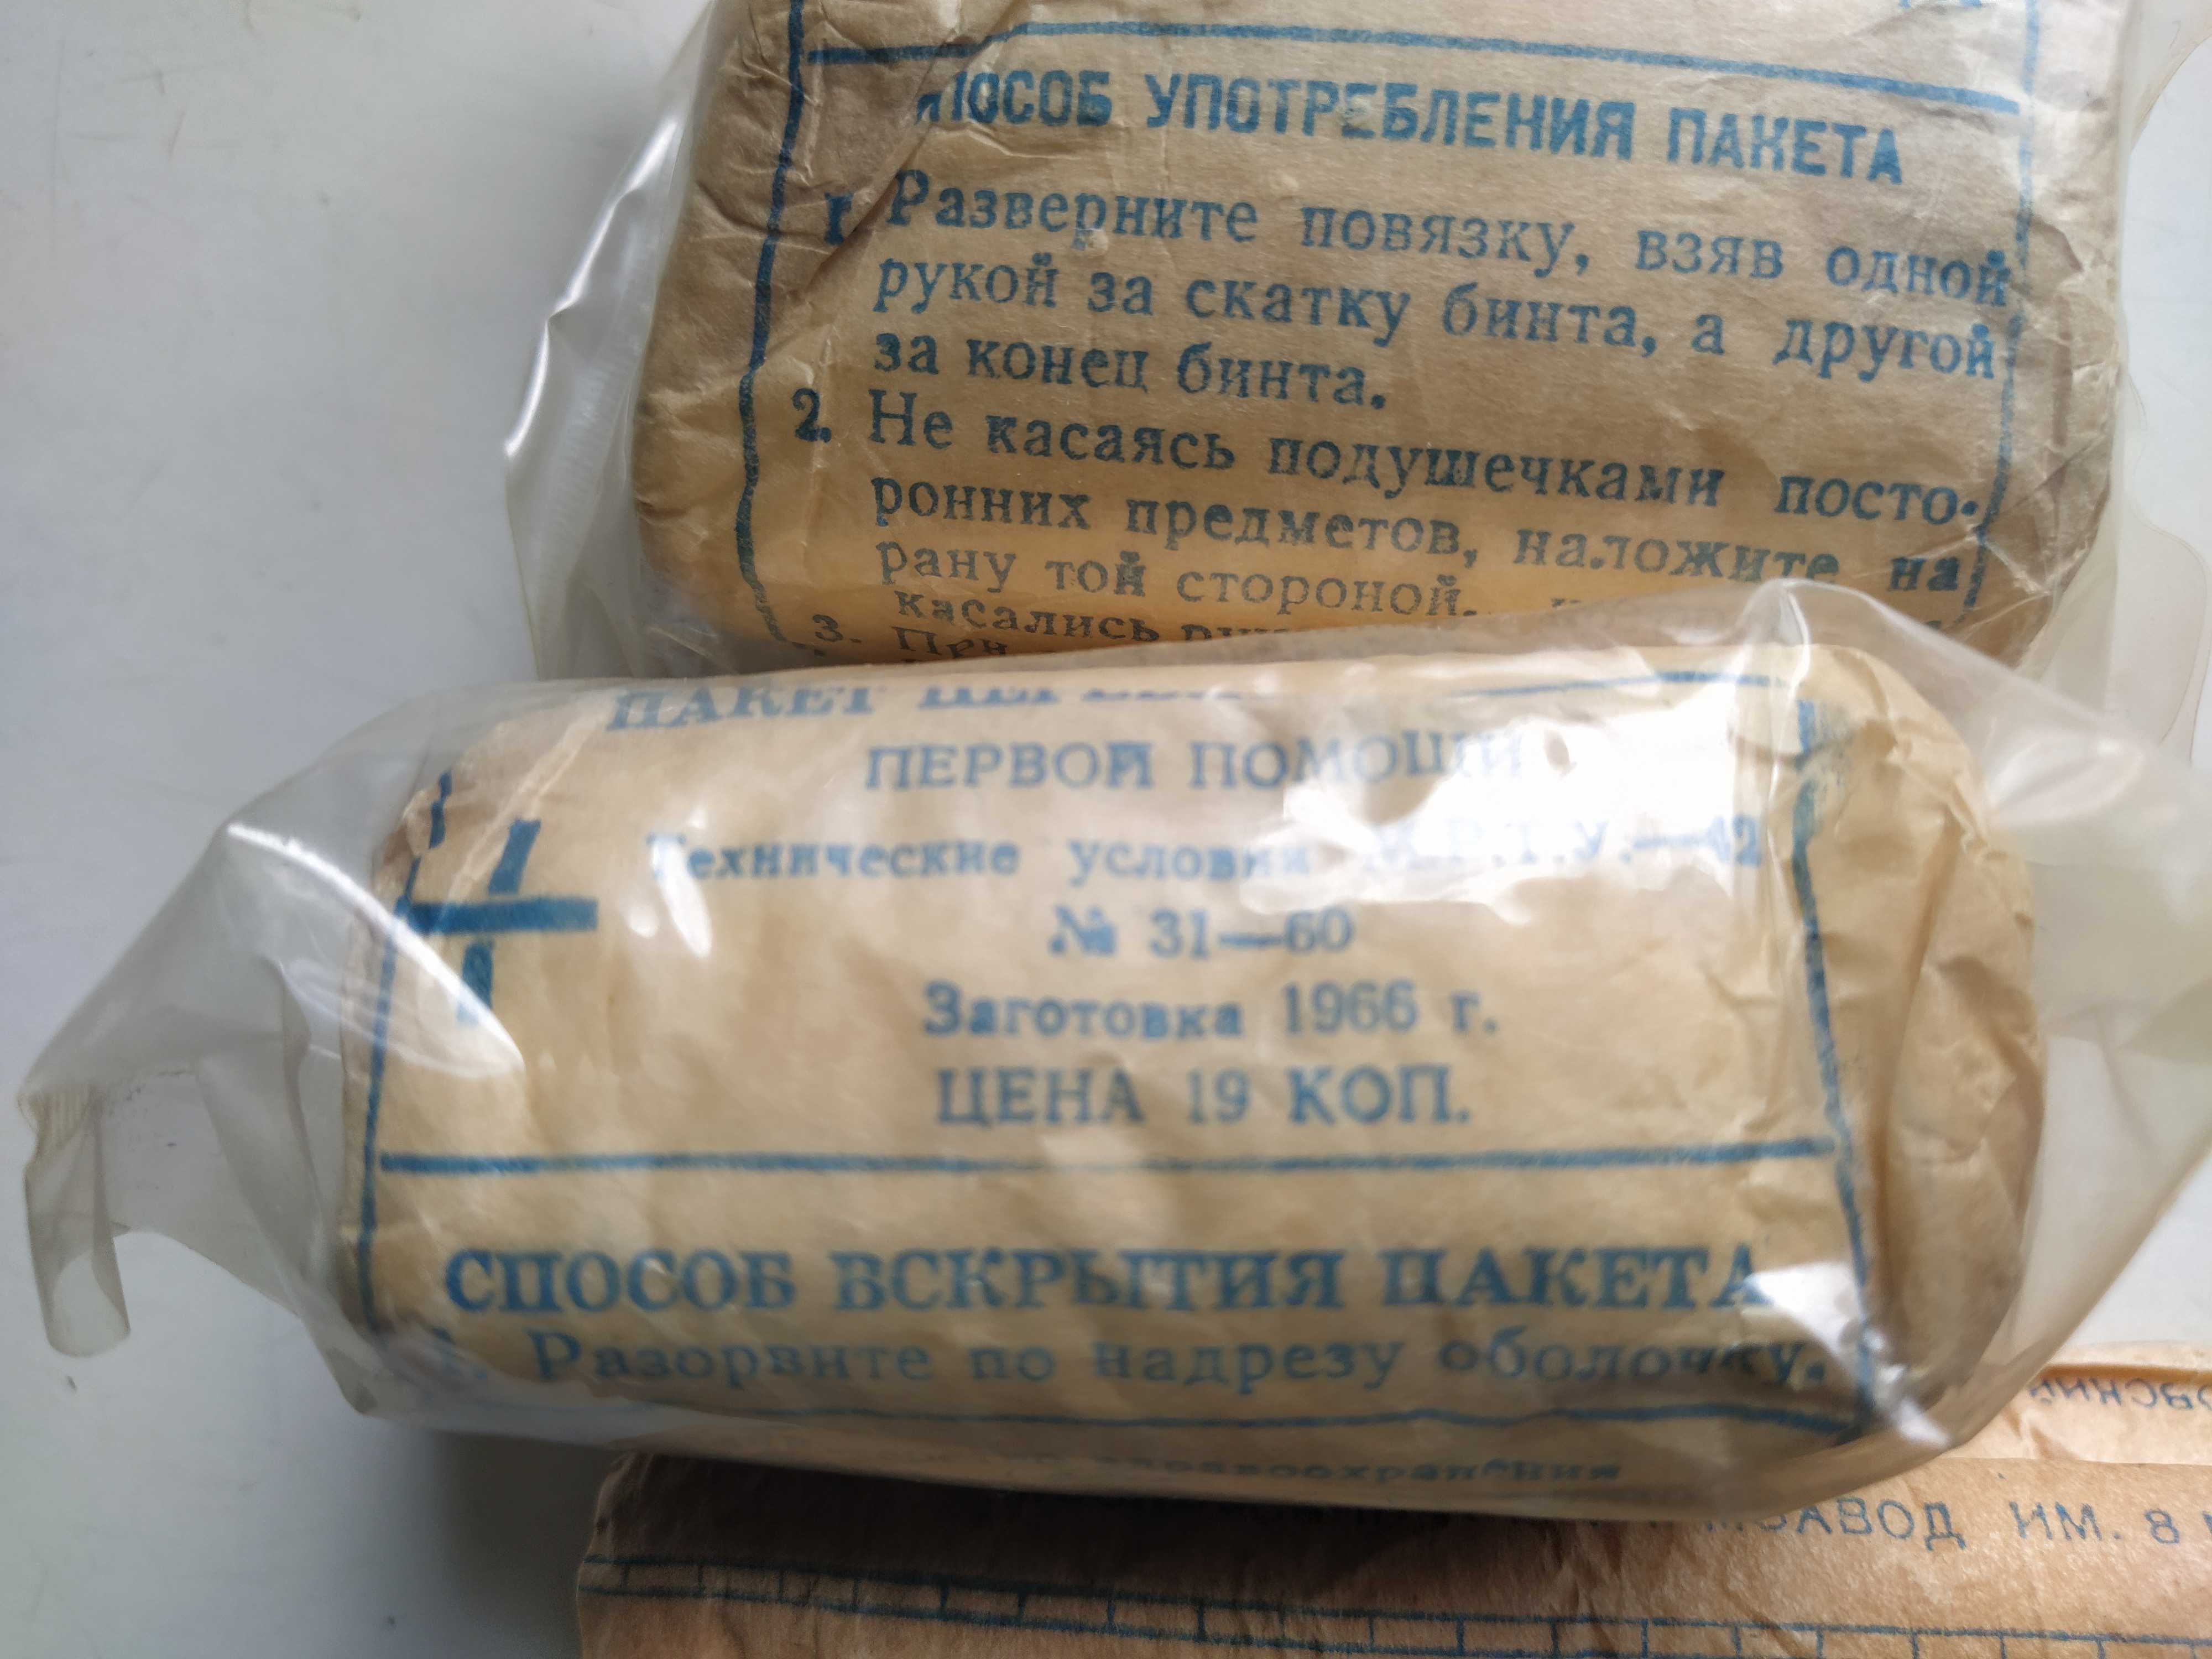 Пакет перевязочный и бинт стерильный СССР (1966г)